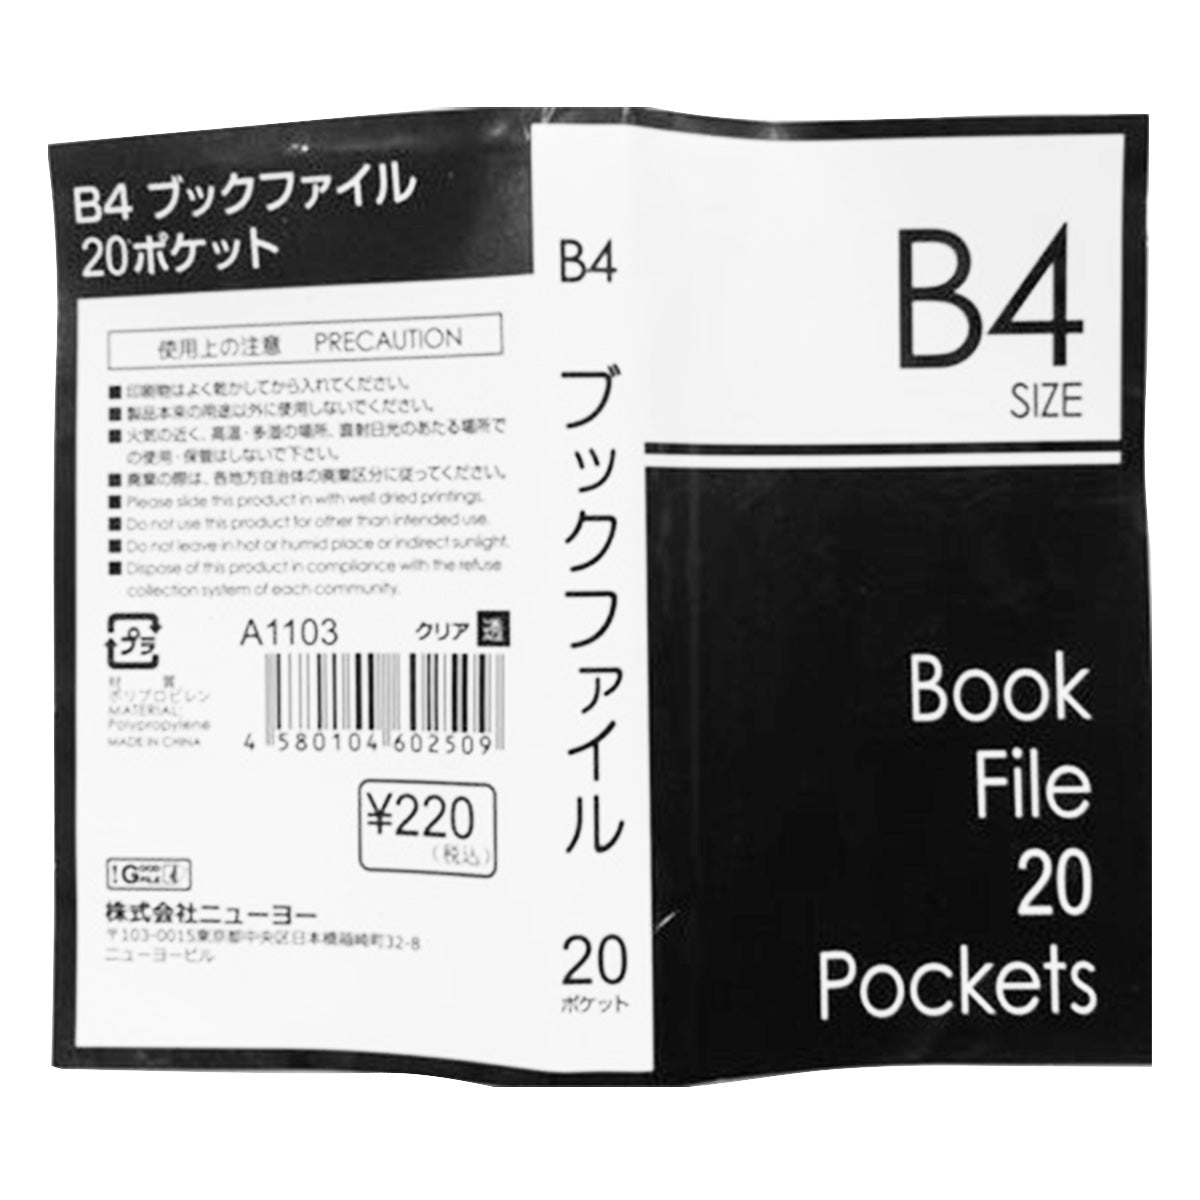 書類ファイル ポケットファイル クリアファイル B4ブックファイル 20P 